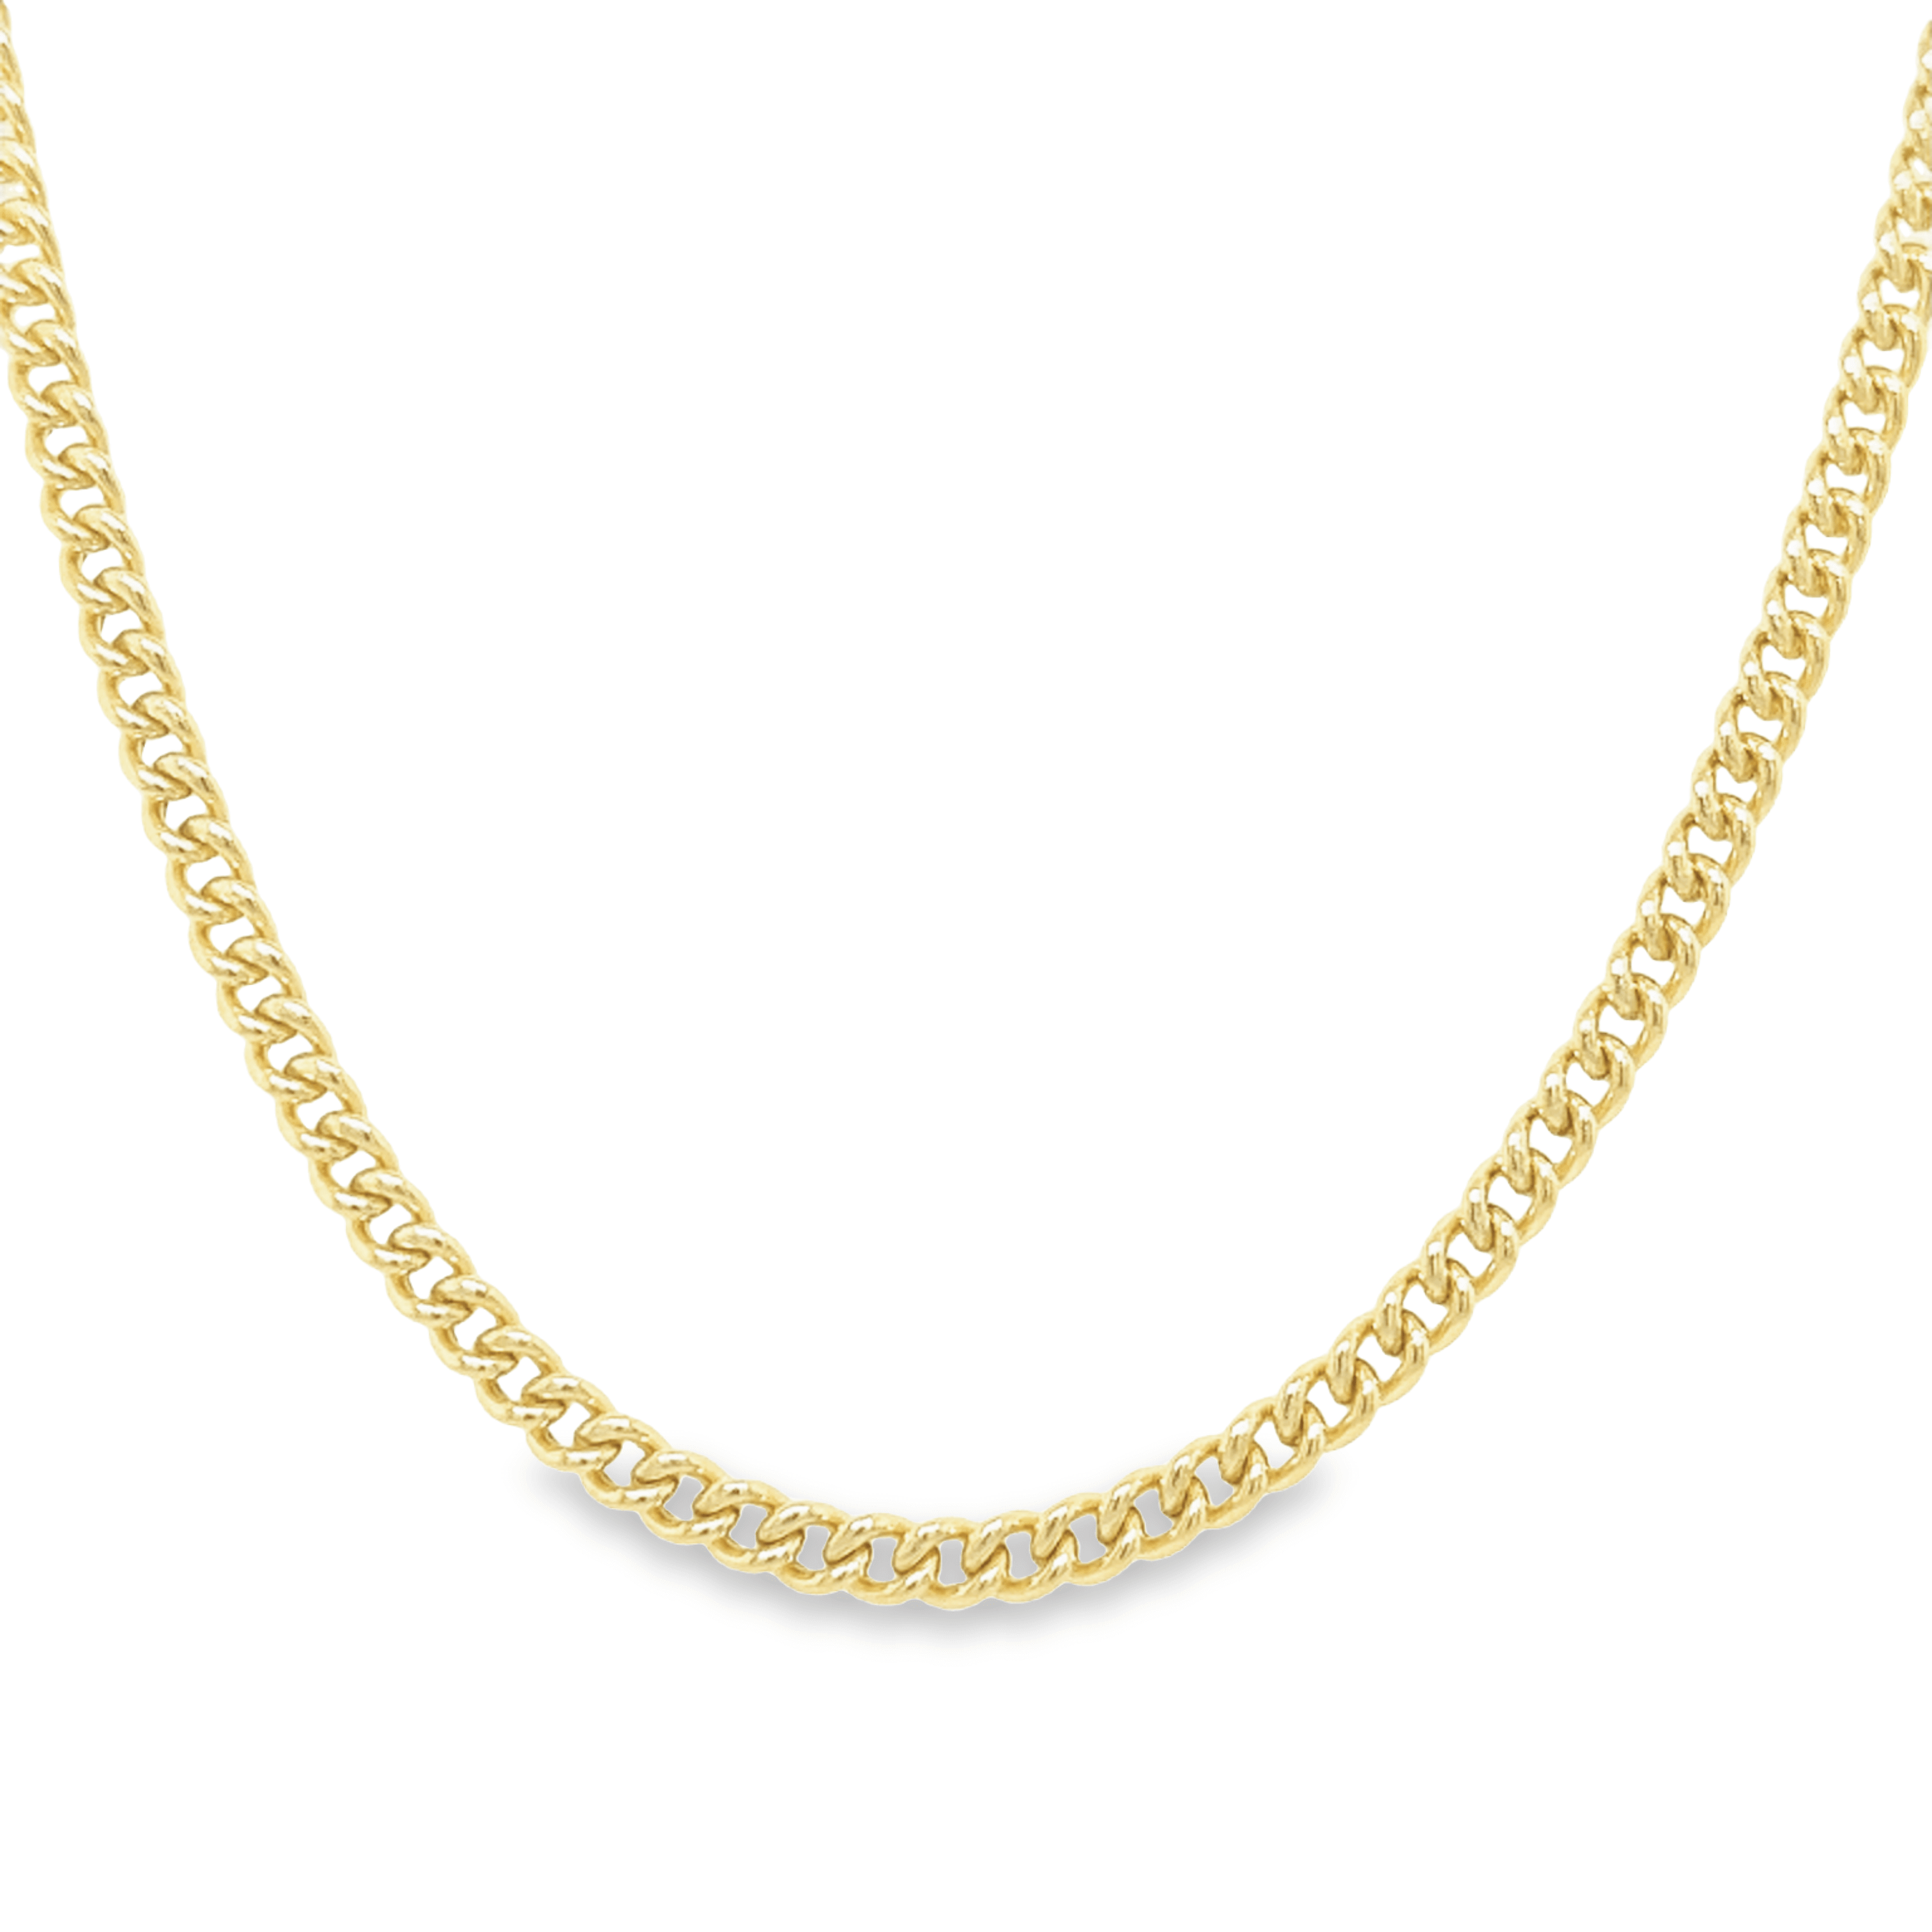 14K Gold 3mm Curb Chain Link Necklace - Necklaces - Izakov Diamonds + Fine Jewelry